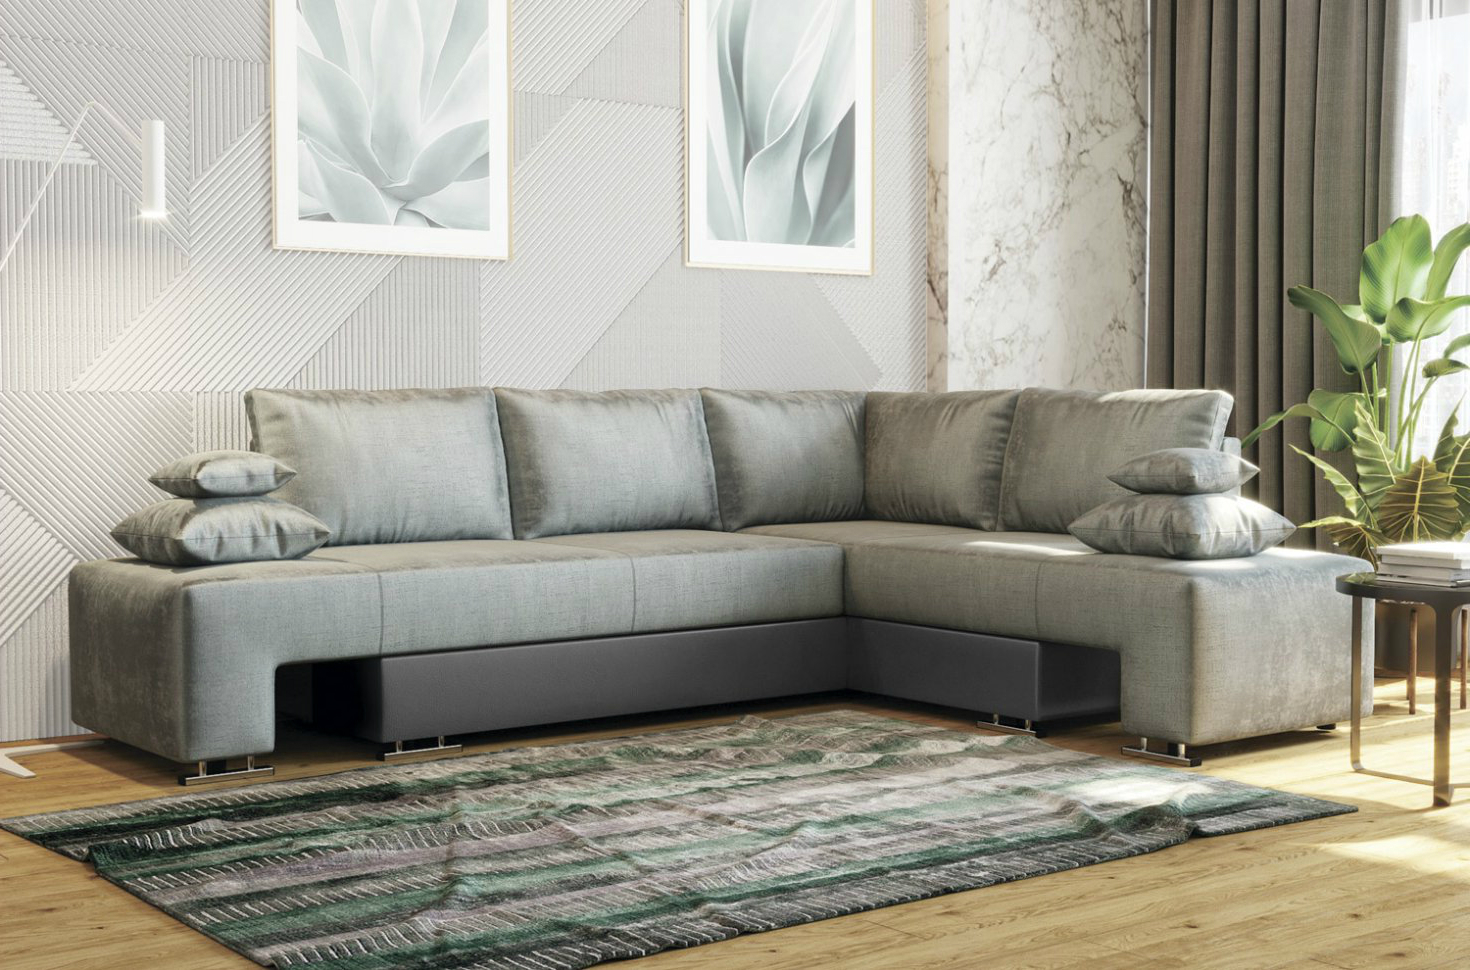 Как выбрать угловой диван в гостиную, кухню, зал и другие комнаты - советы дизайнеров Gliver